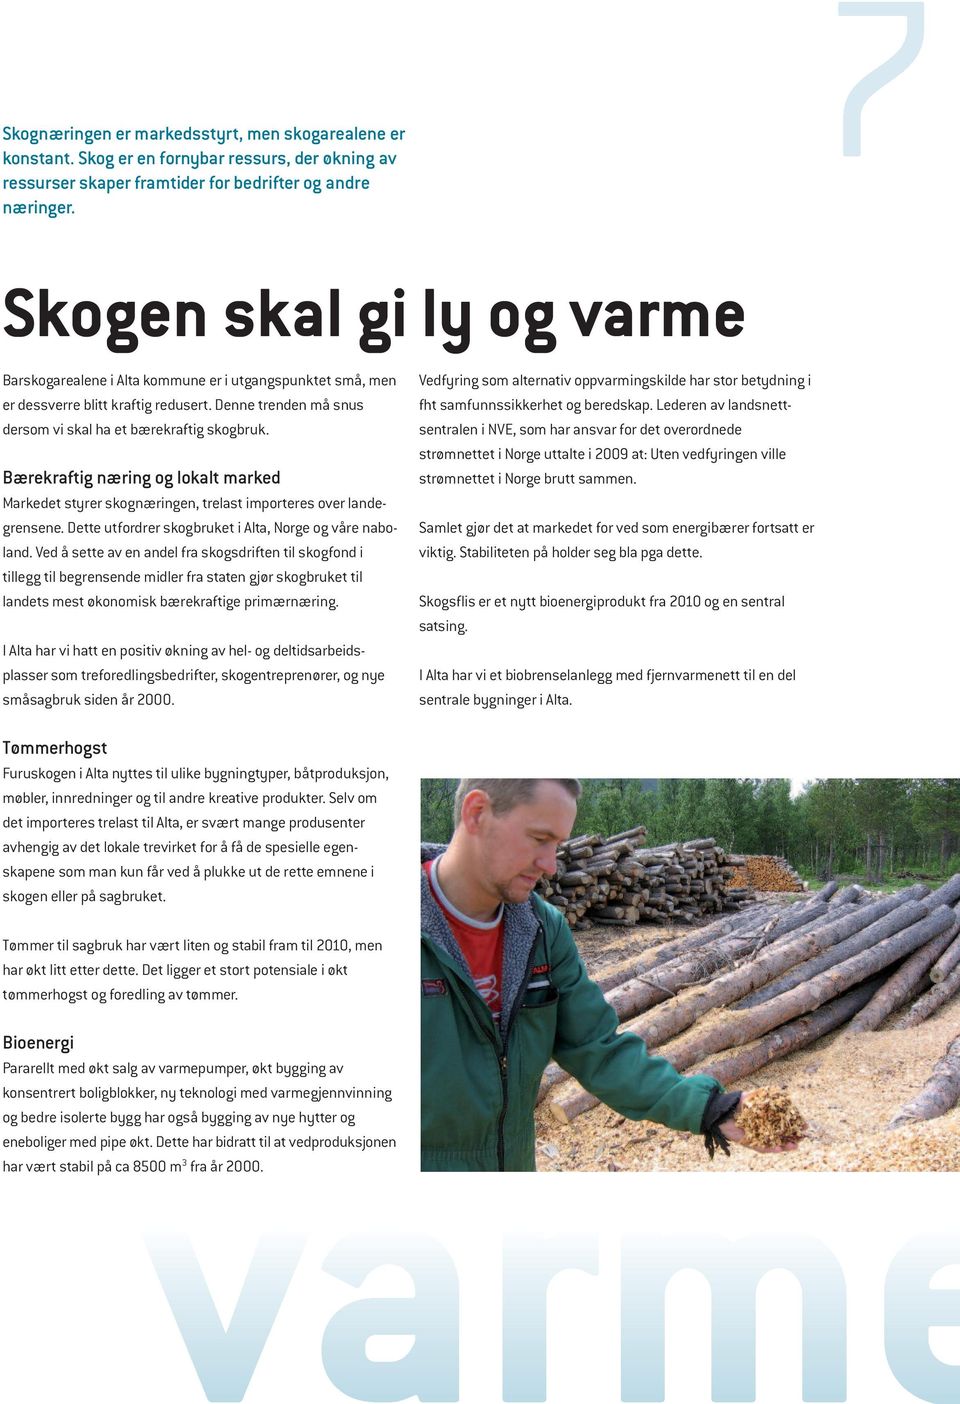 Bærekraftig næring og lokalt marked Markedet styrer skognæringen, trelast importeres over landegrensene. Dette utfordrer skogbruket i Alta, Norge og våre naboland.